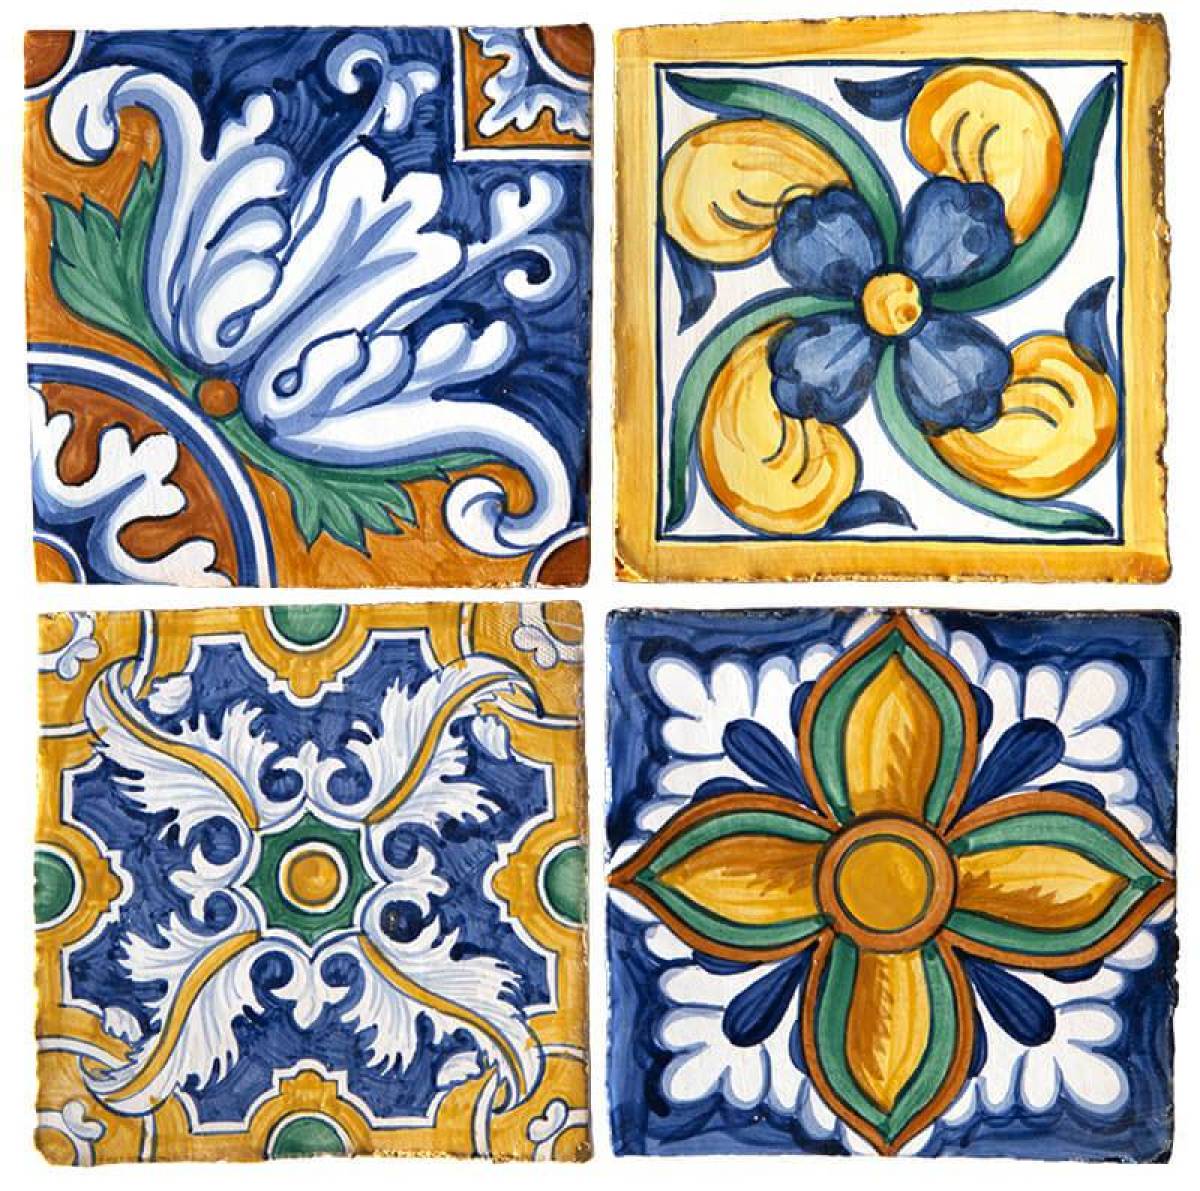 Coloring bright ceramic tiles